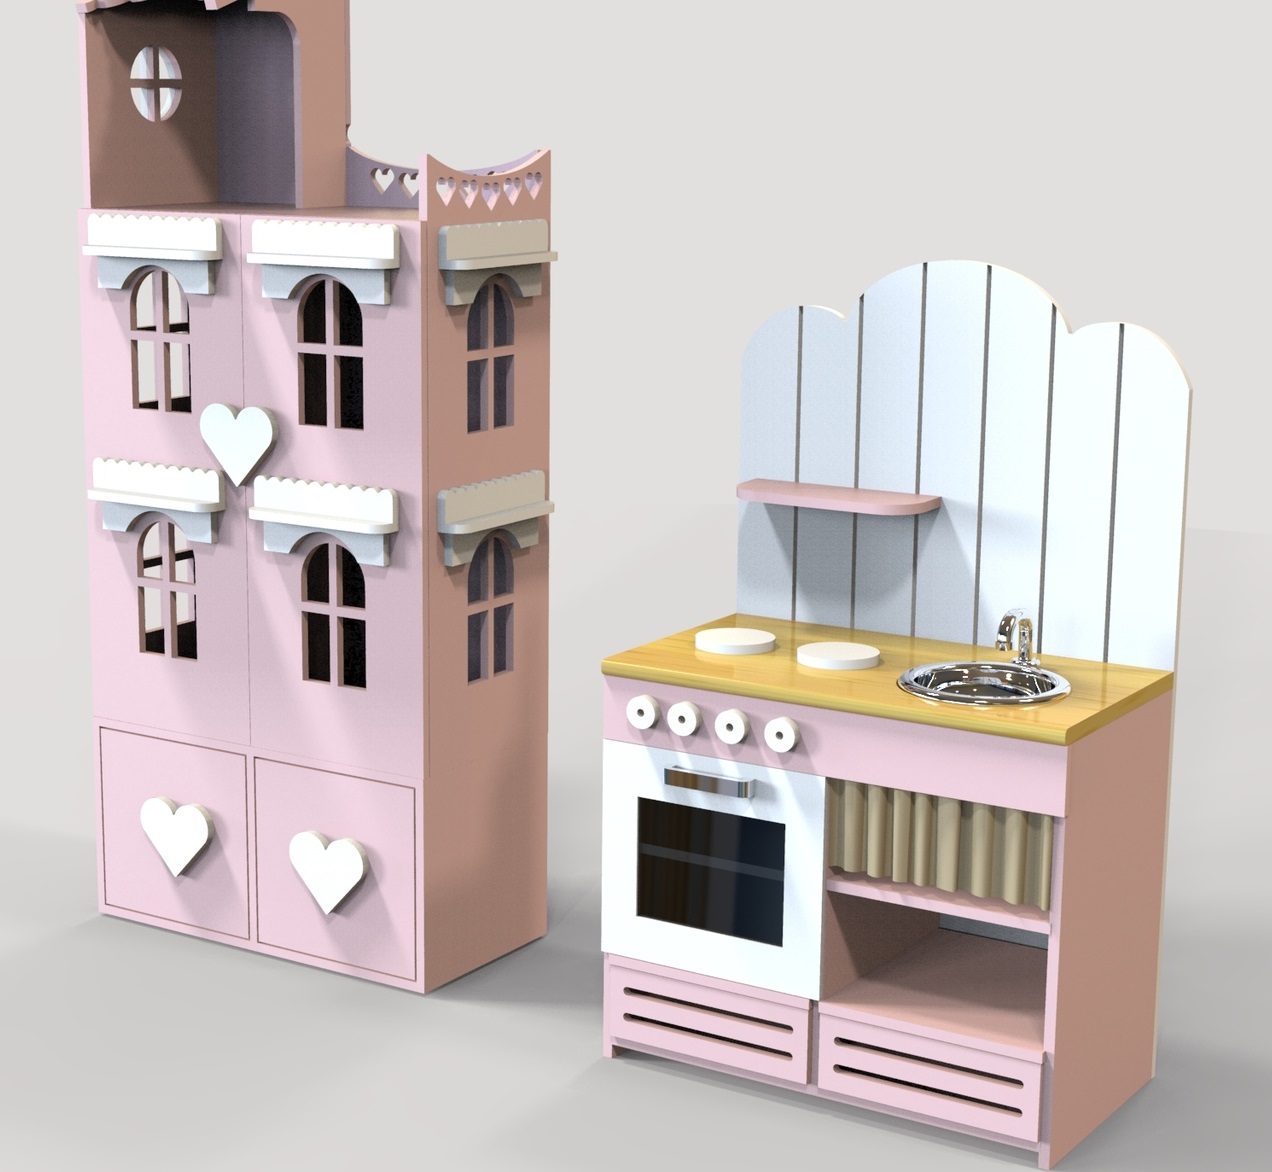 Maison de poupée découpée au laser et cuisine miniature